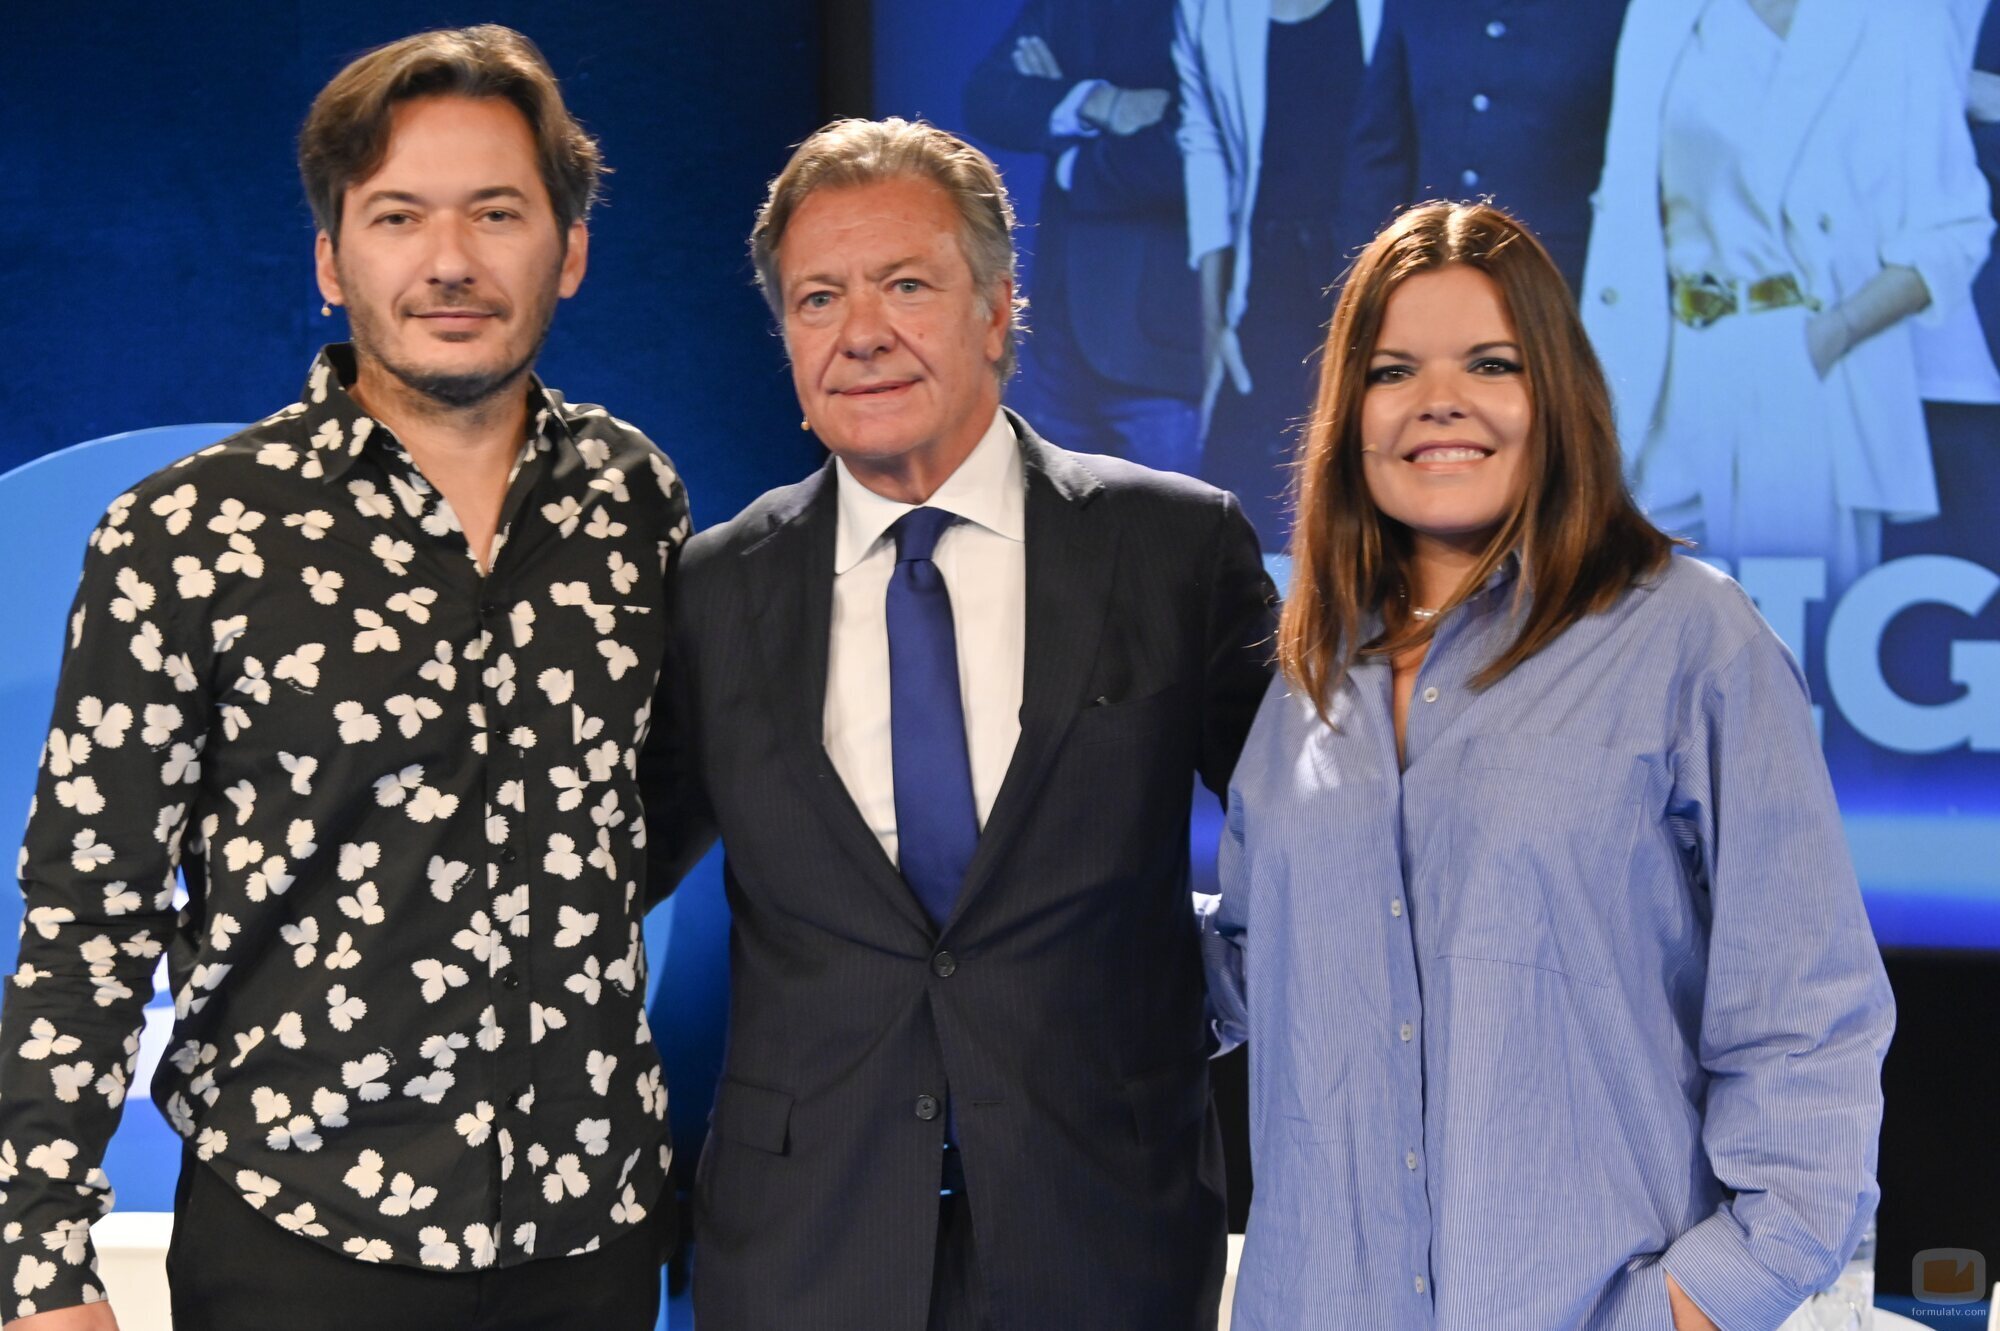 Alberto Caballero, Alessandro Salem y Laura Caballero en la presentación de contenidos de Telecinco